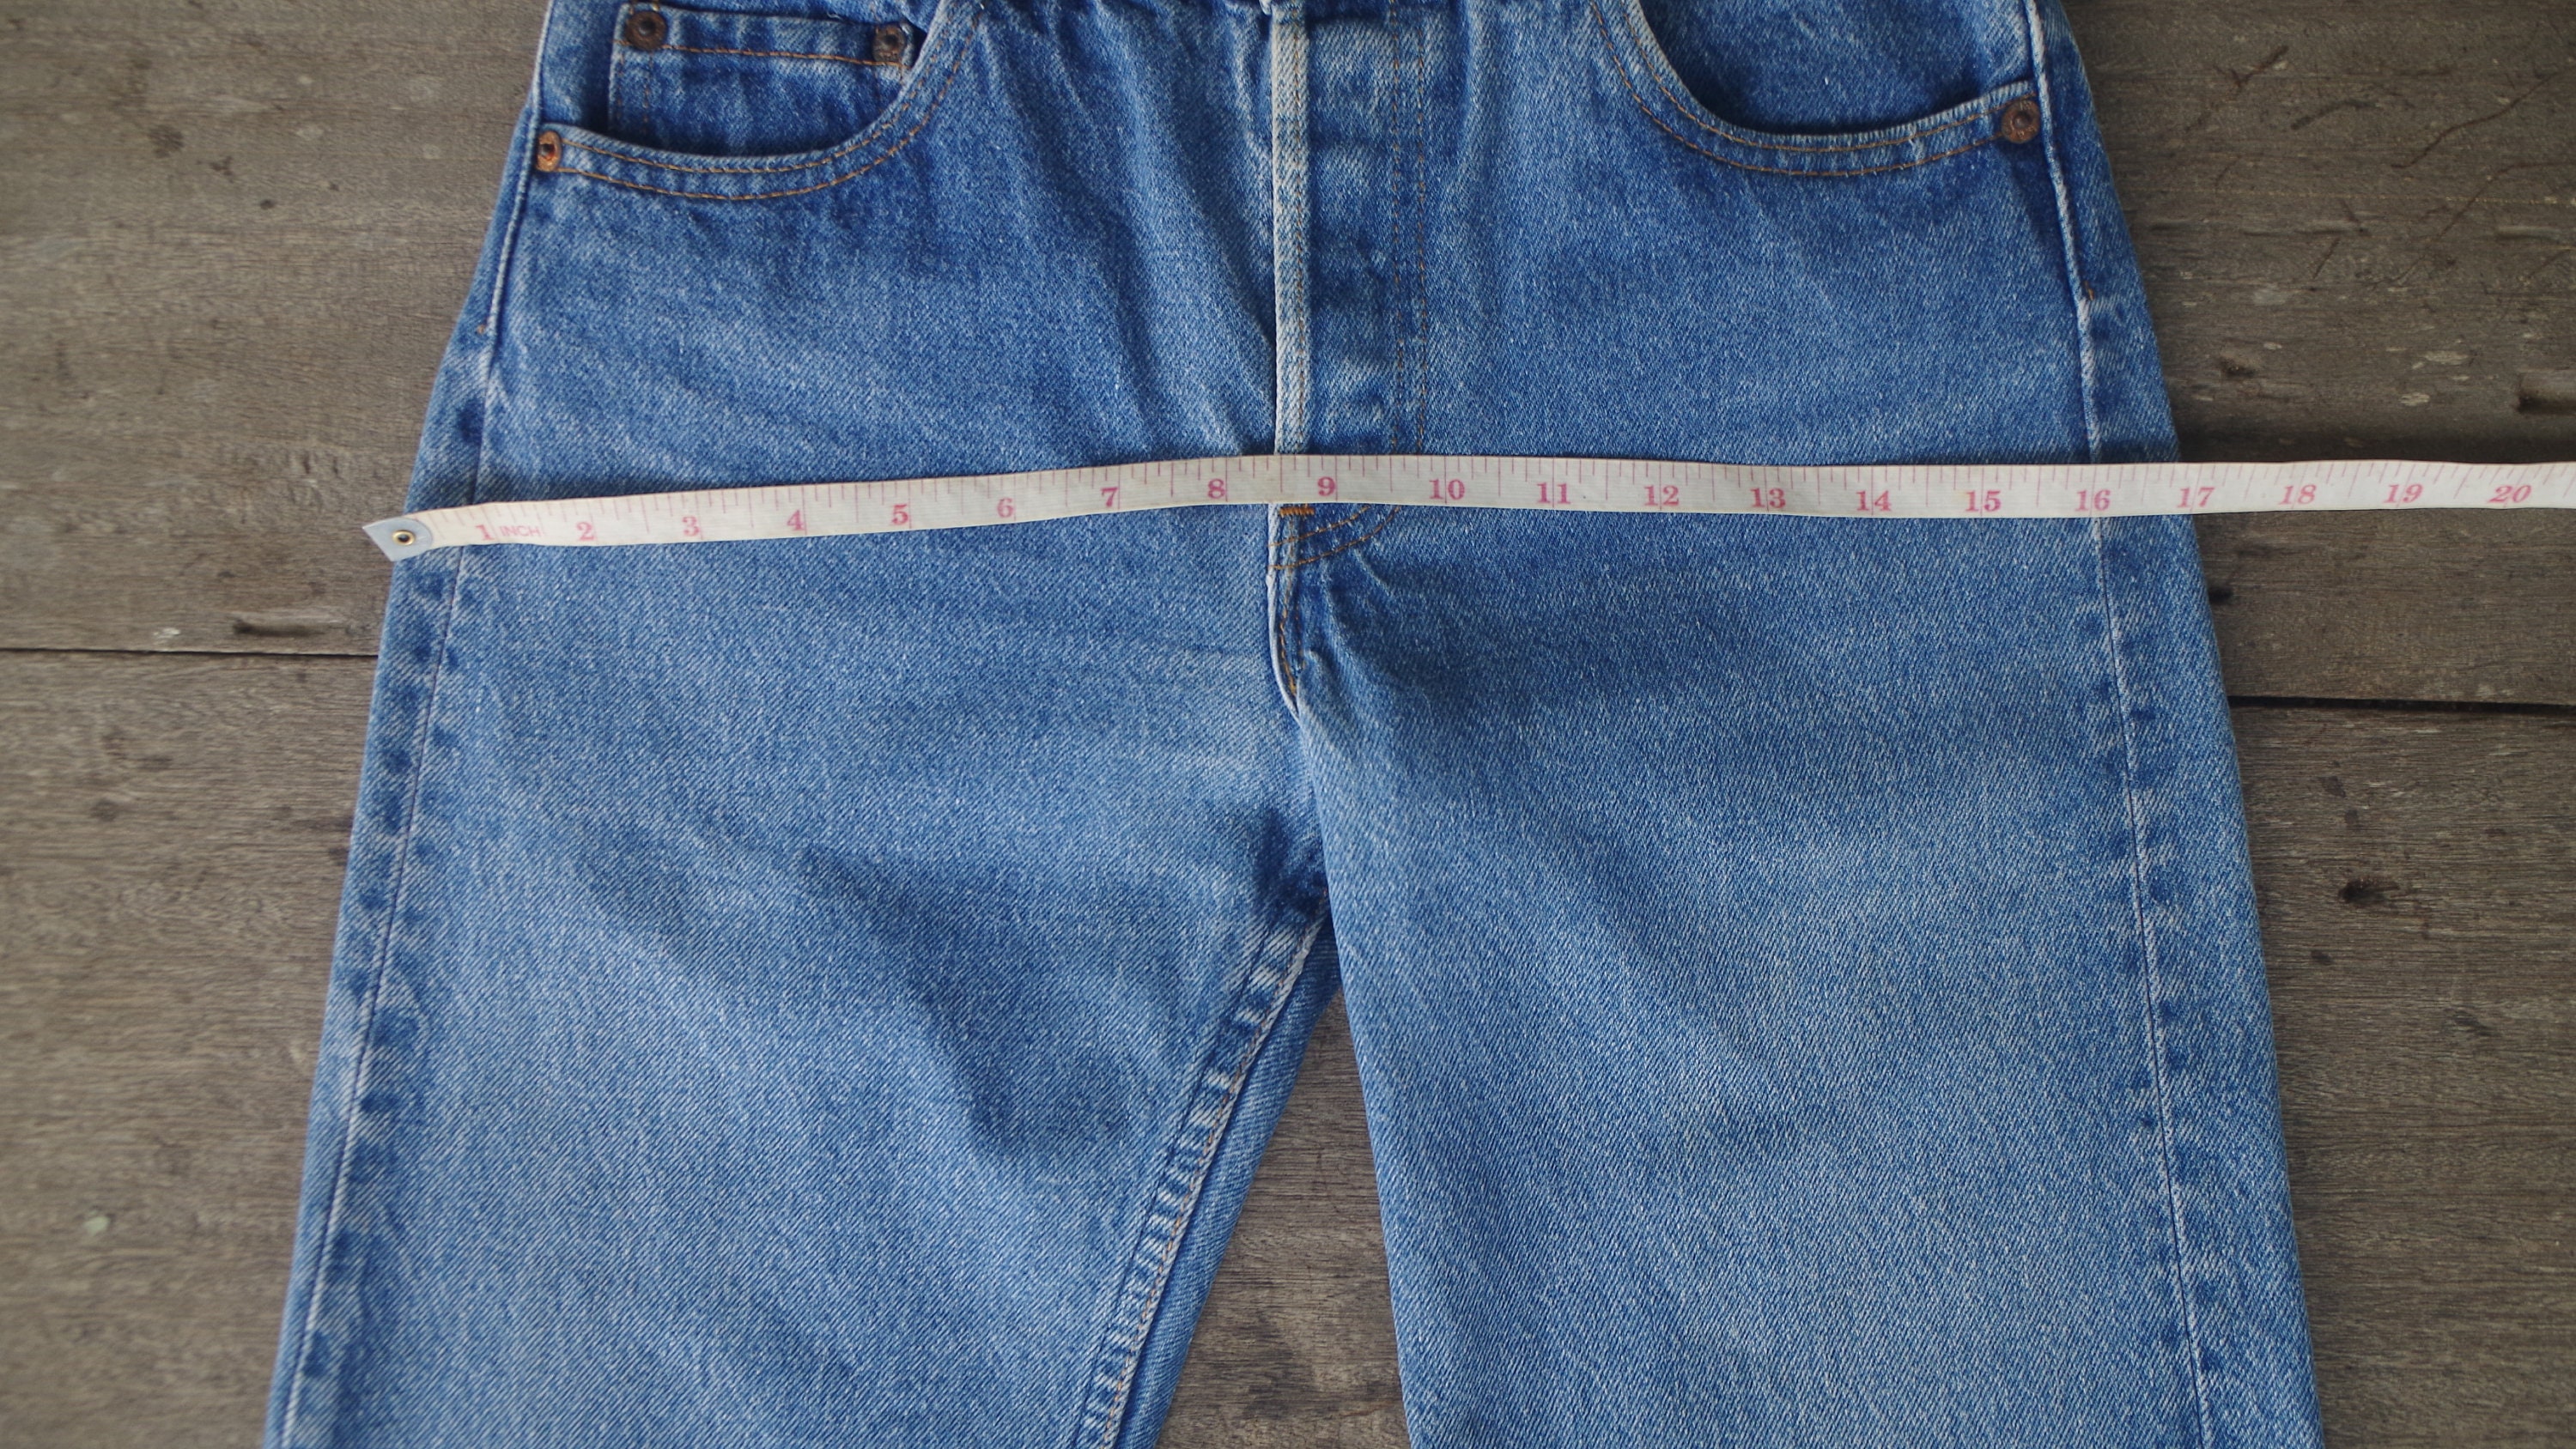 Beautiful Jeans vintage 80s Levis 701-501 Student Fit W25 L32 - Etsy